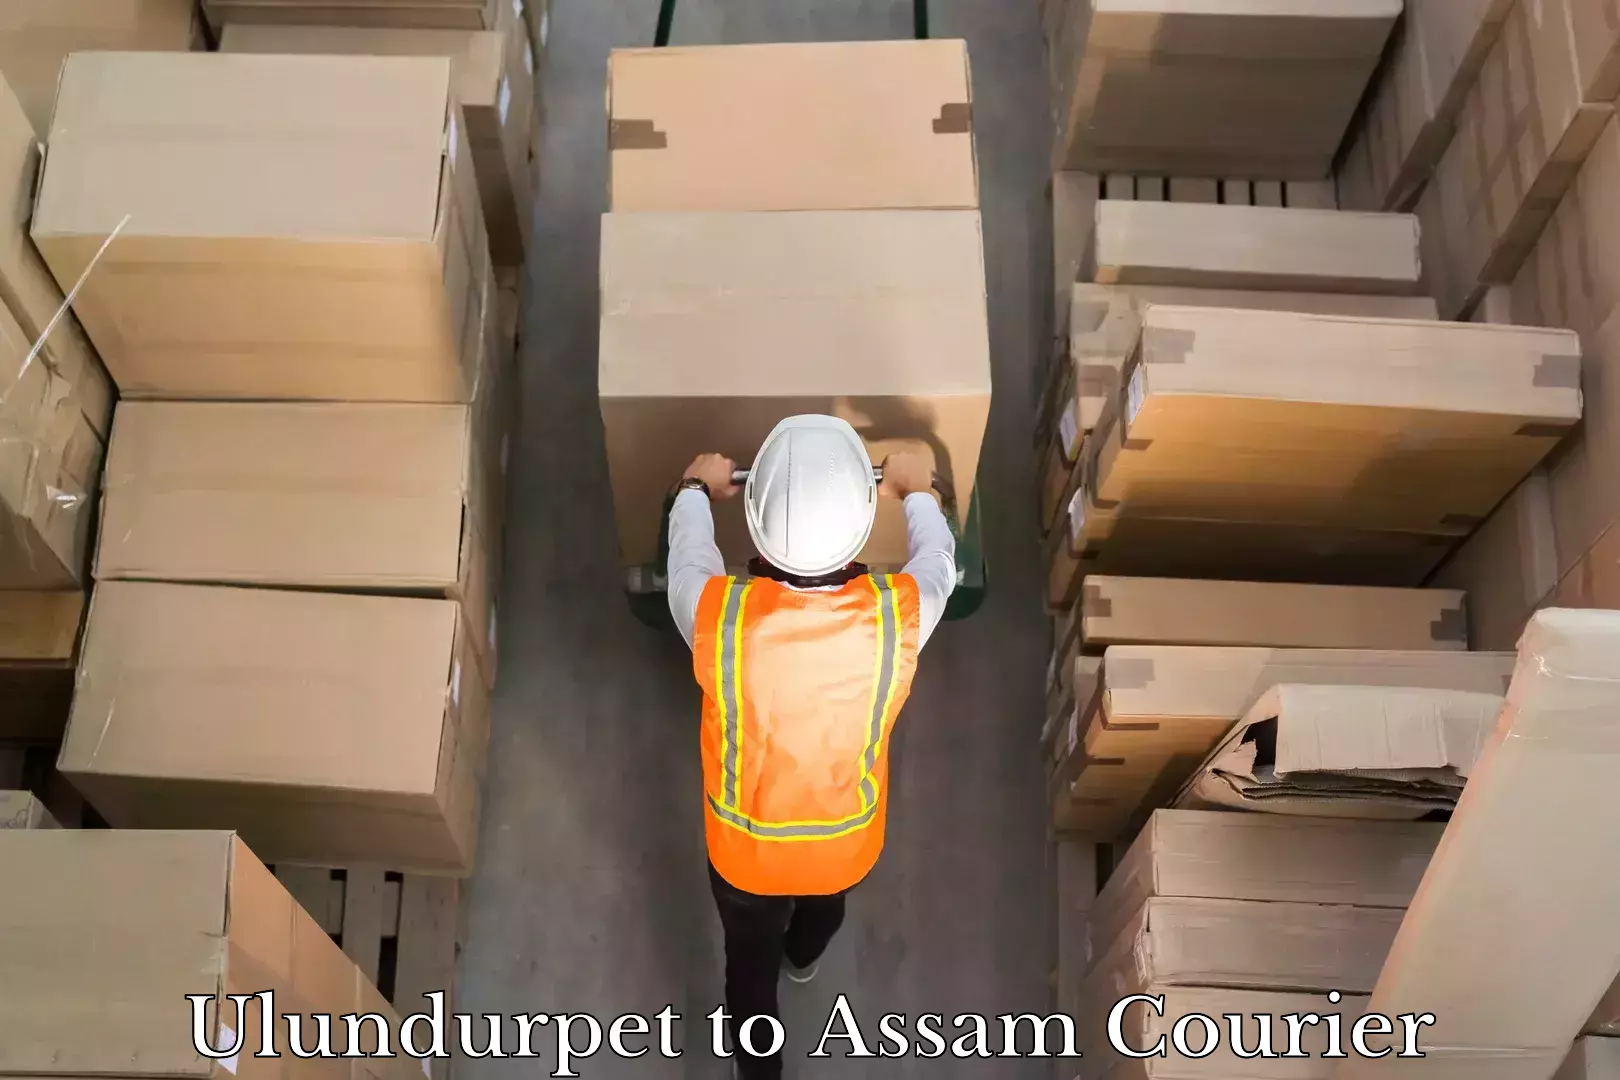 Express logistics service Ulundurpet to Assam